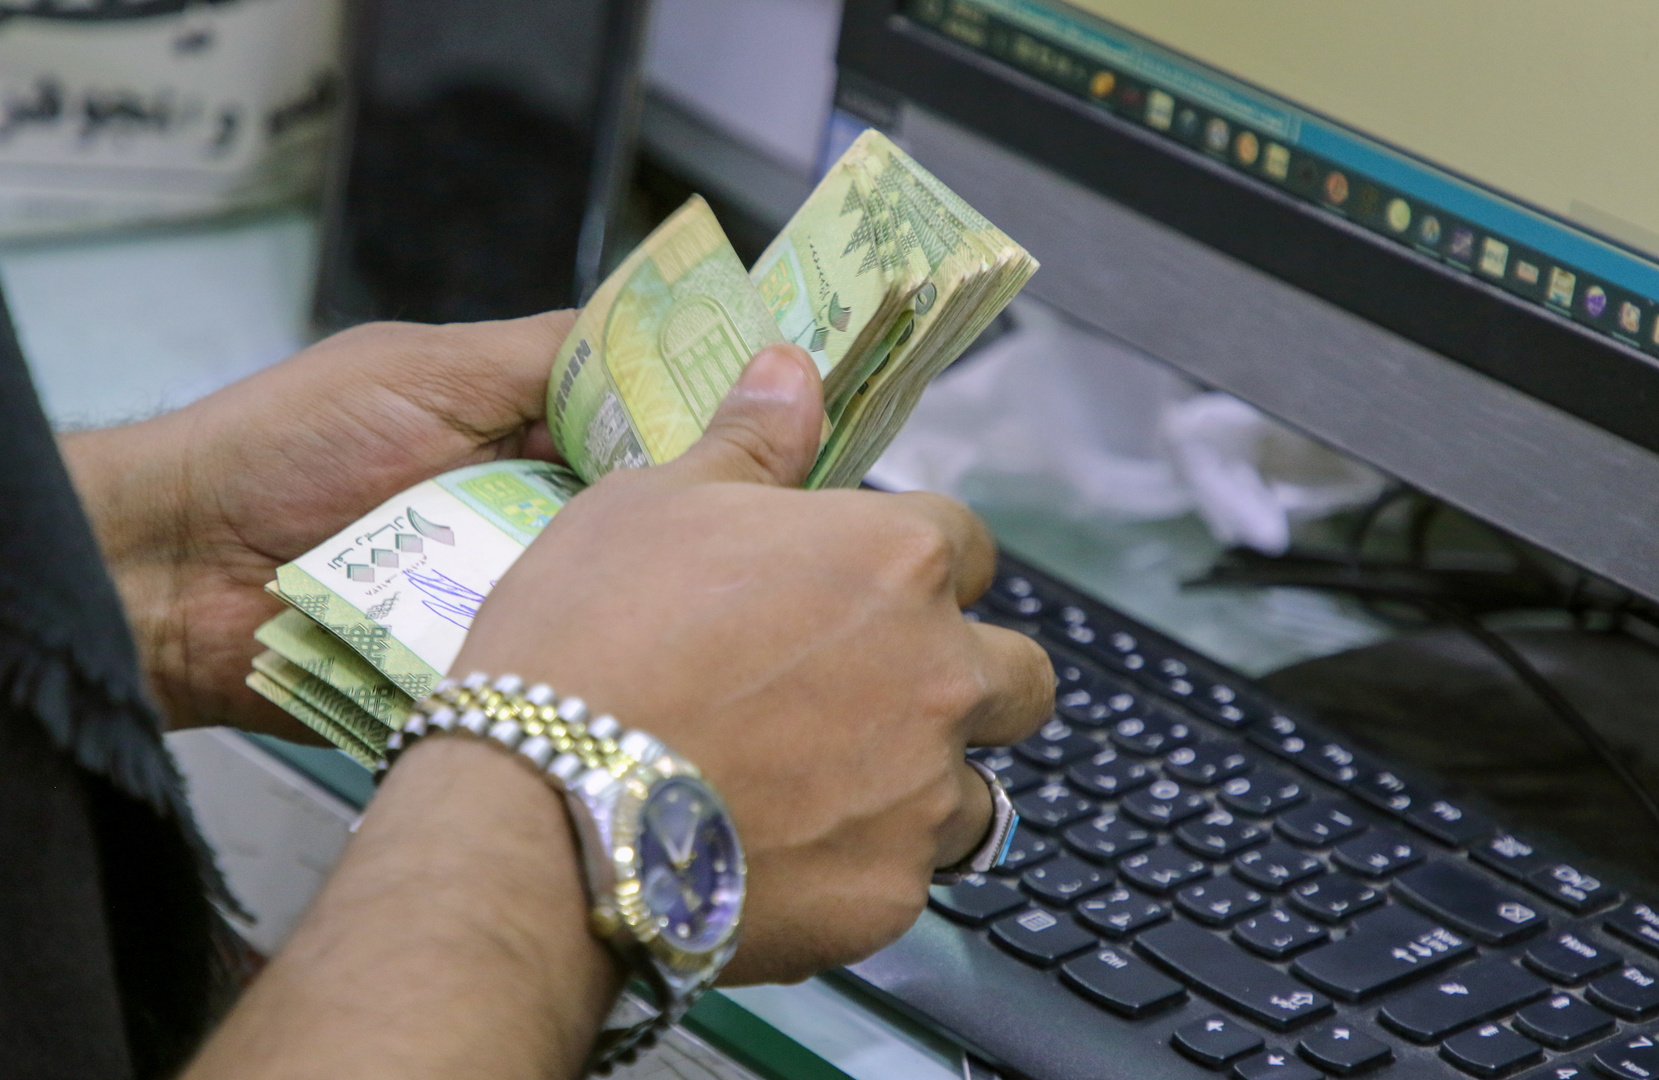 الريال اليمني يعاود الهبوط أمام الدولار والسعودي بعدن وصنعاء اليوم.. السعر الآن